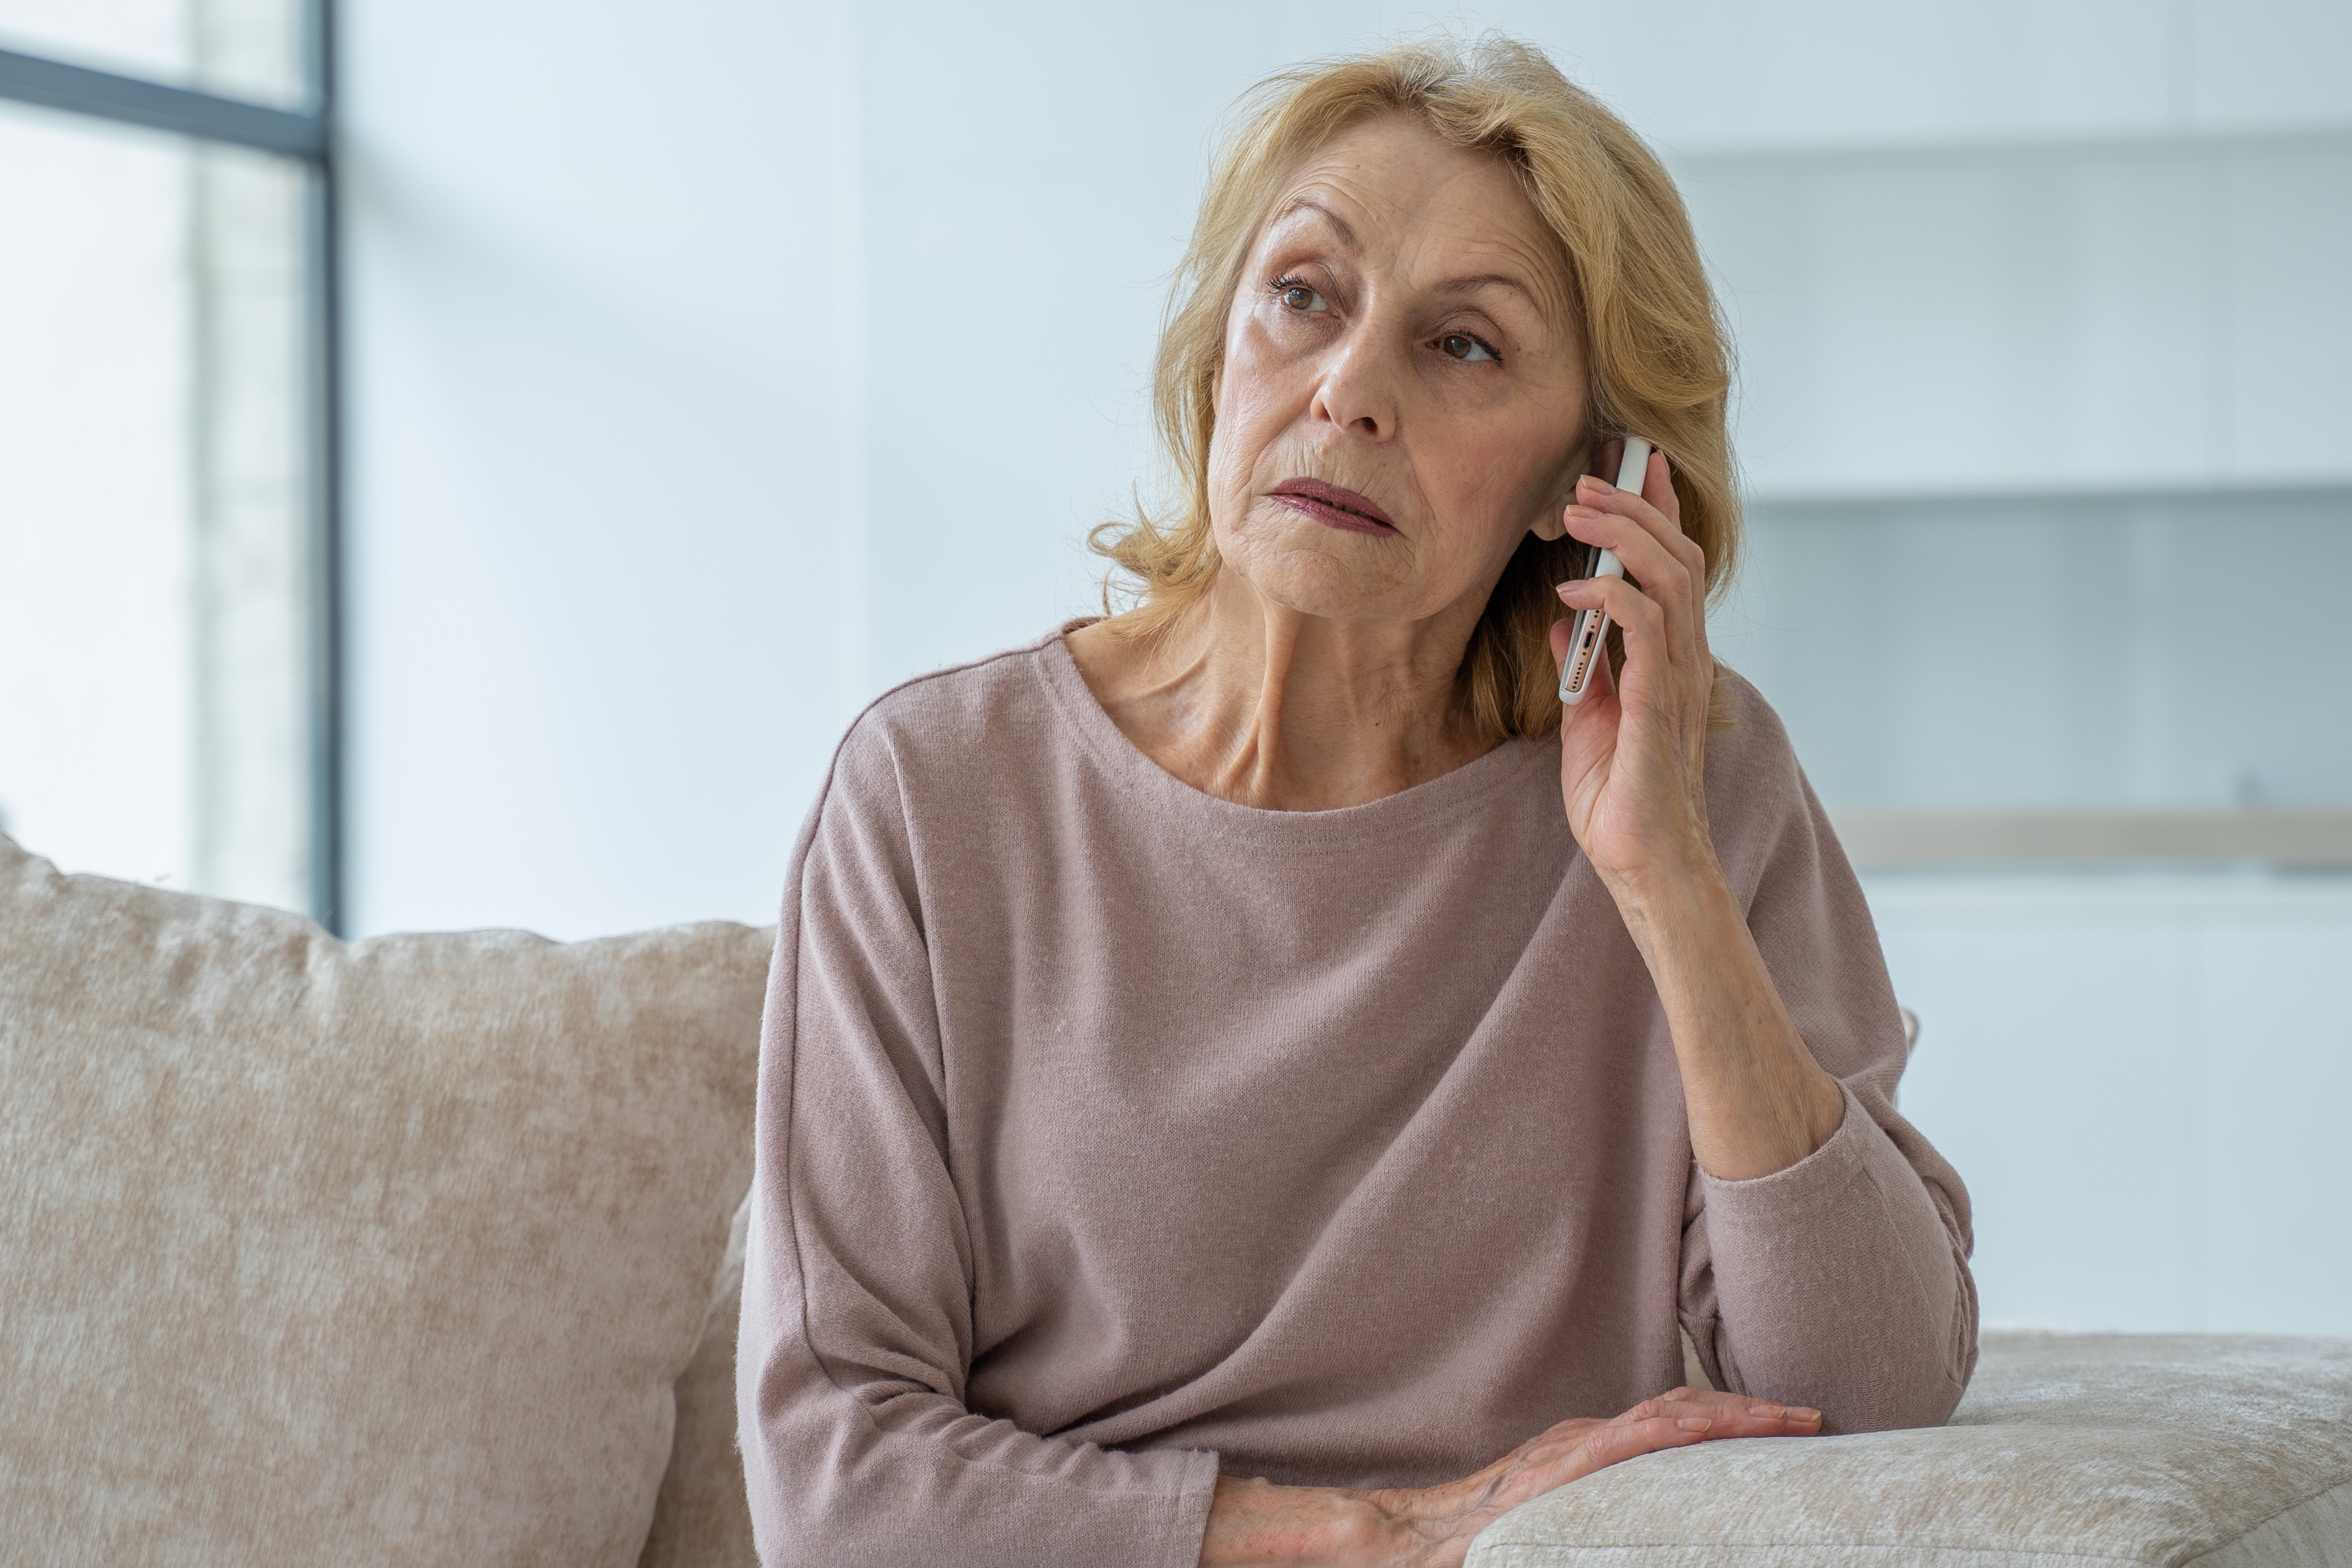 Une femme âgée à l'air triste alors qu'elle est au téléphone | Source : Shutterstock